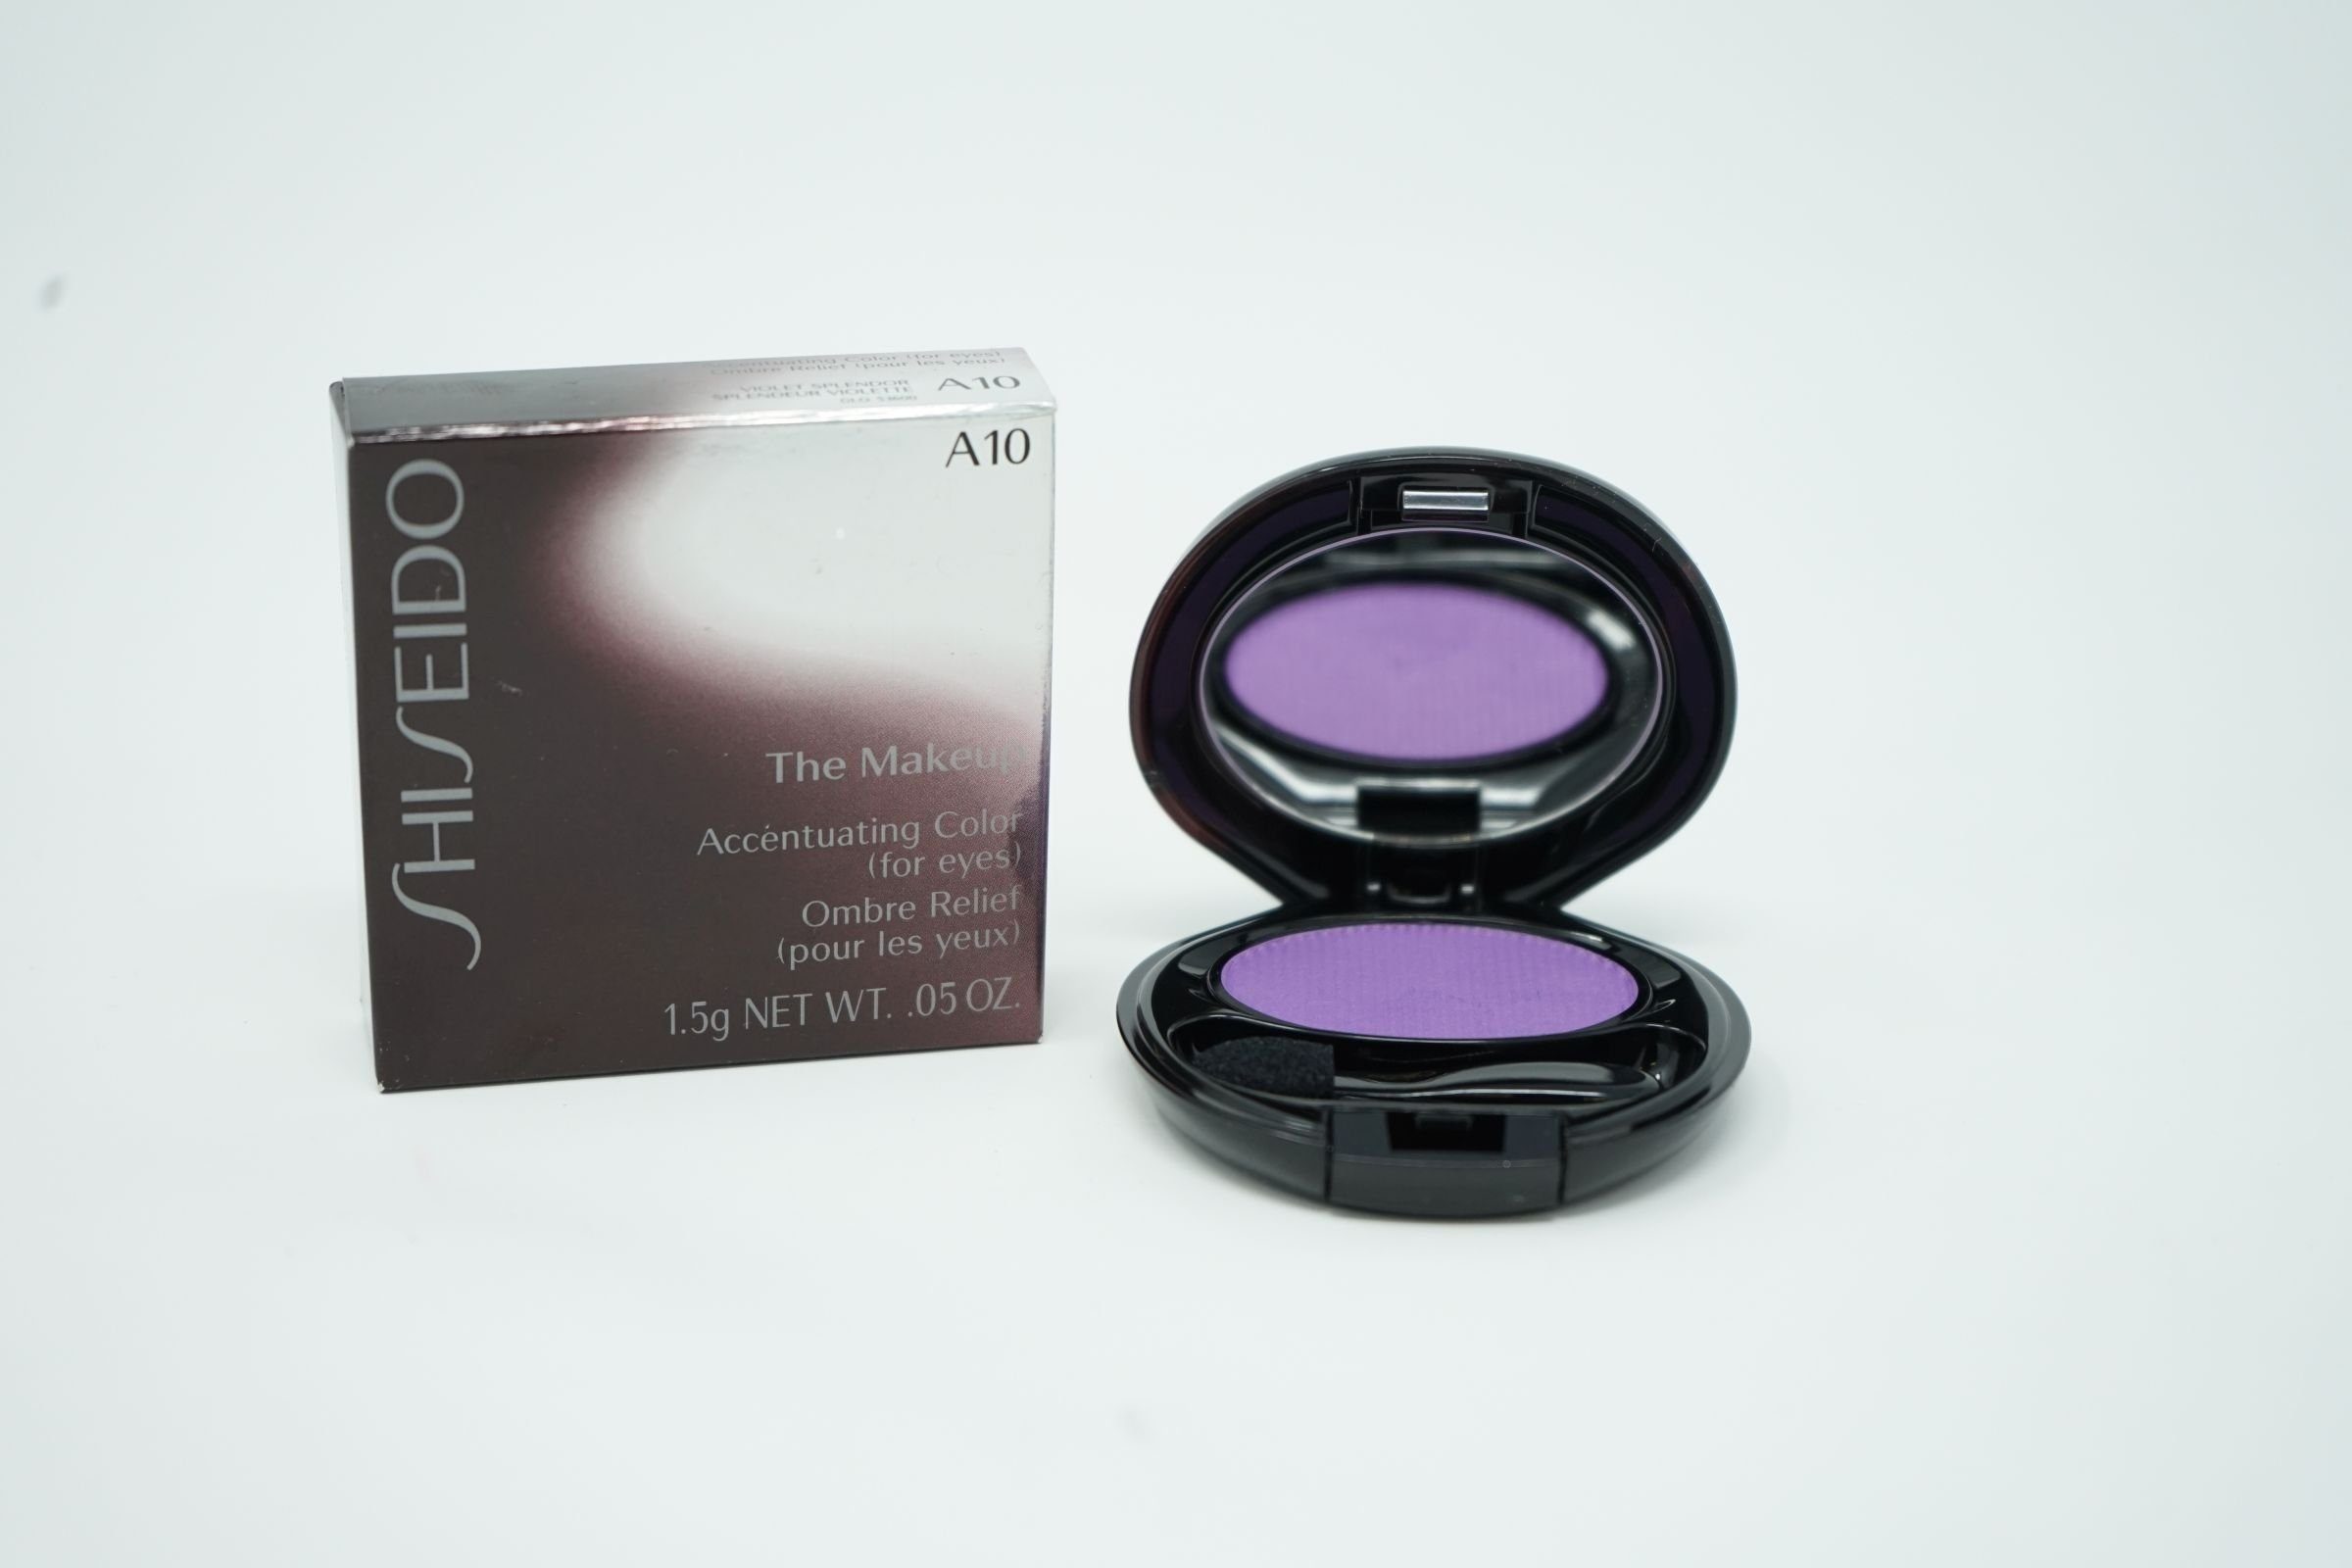 SHISEIDO Augenbrauen-Farbe Shiseido The Makeup Accentuating Color For Eyes A10 Violet Splendor